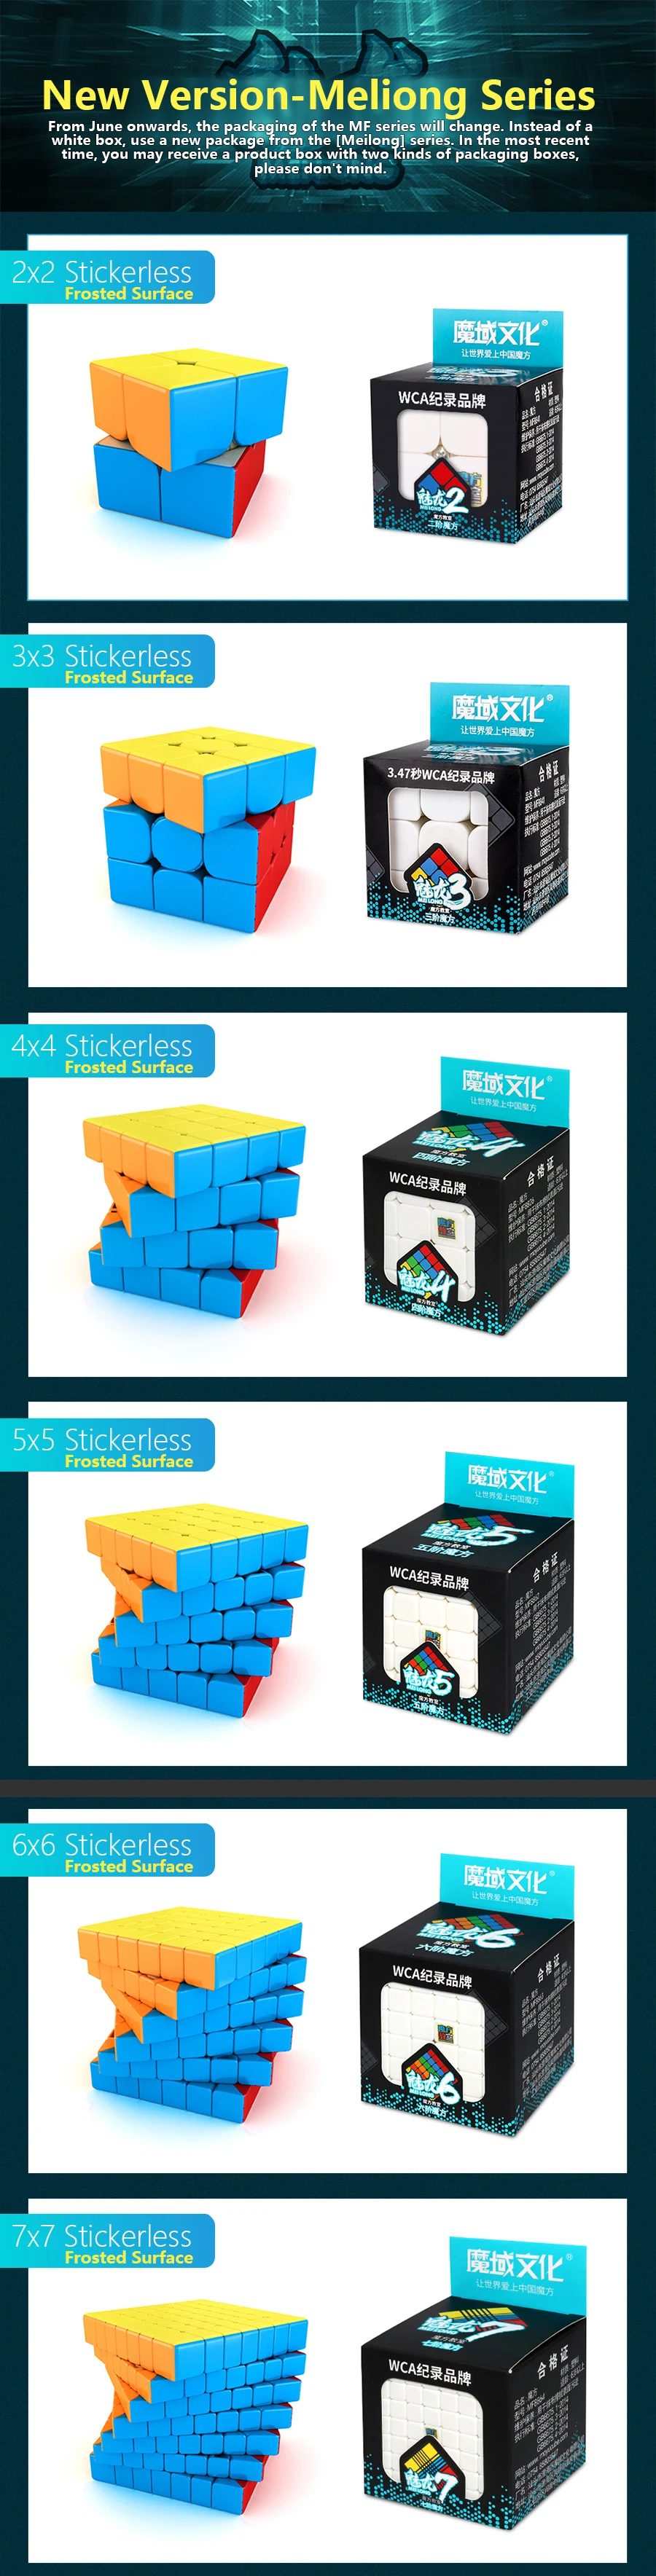 Волшебная Скорость кубик 3х3х3, 2x2x2 4x4x4 5x5x5, 6x6x6 7x7x7 Cubo Magico, 2x2/oneplus 3/OnePlus x 3 4x4 5x5 6x6 7x7 Головоломка Куб Meilong игрушка малыш подарки